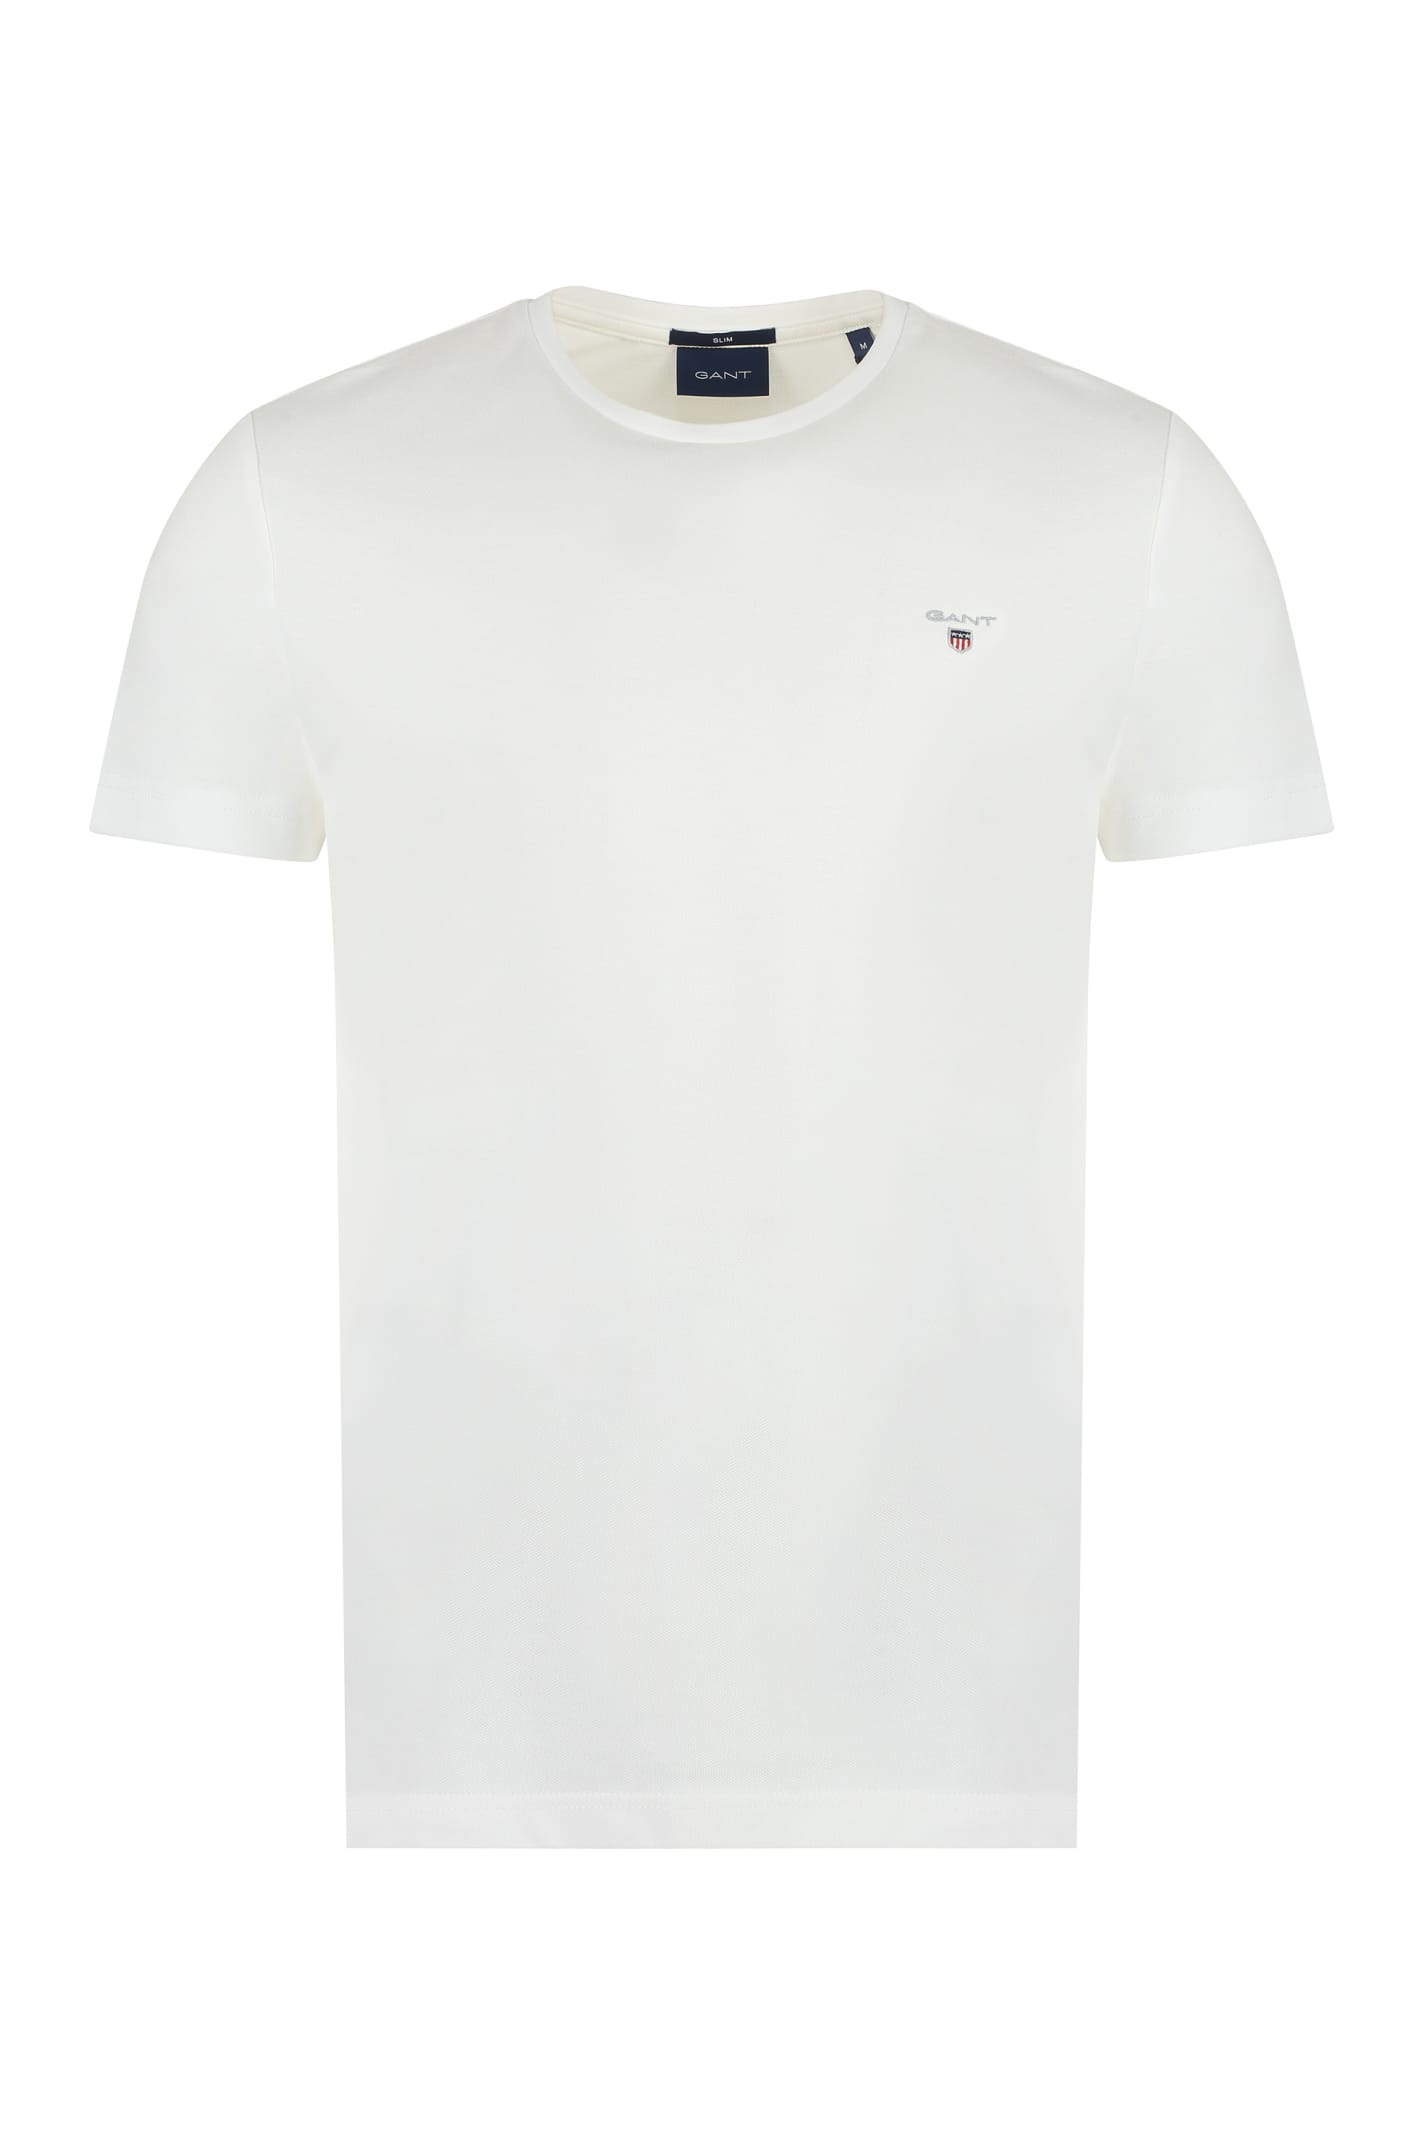 Gant Cotton Piqué T-shirt